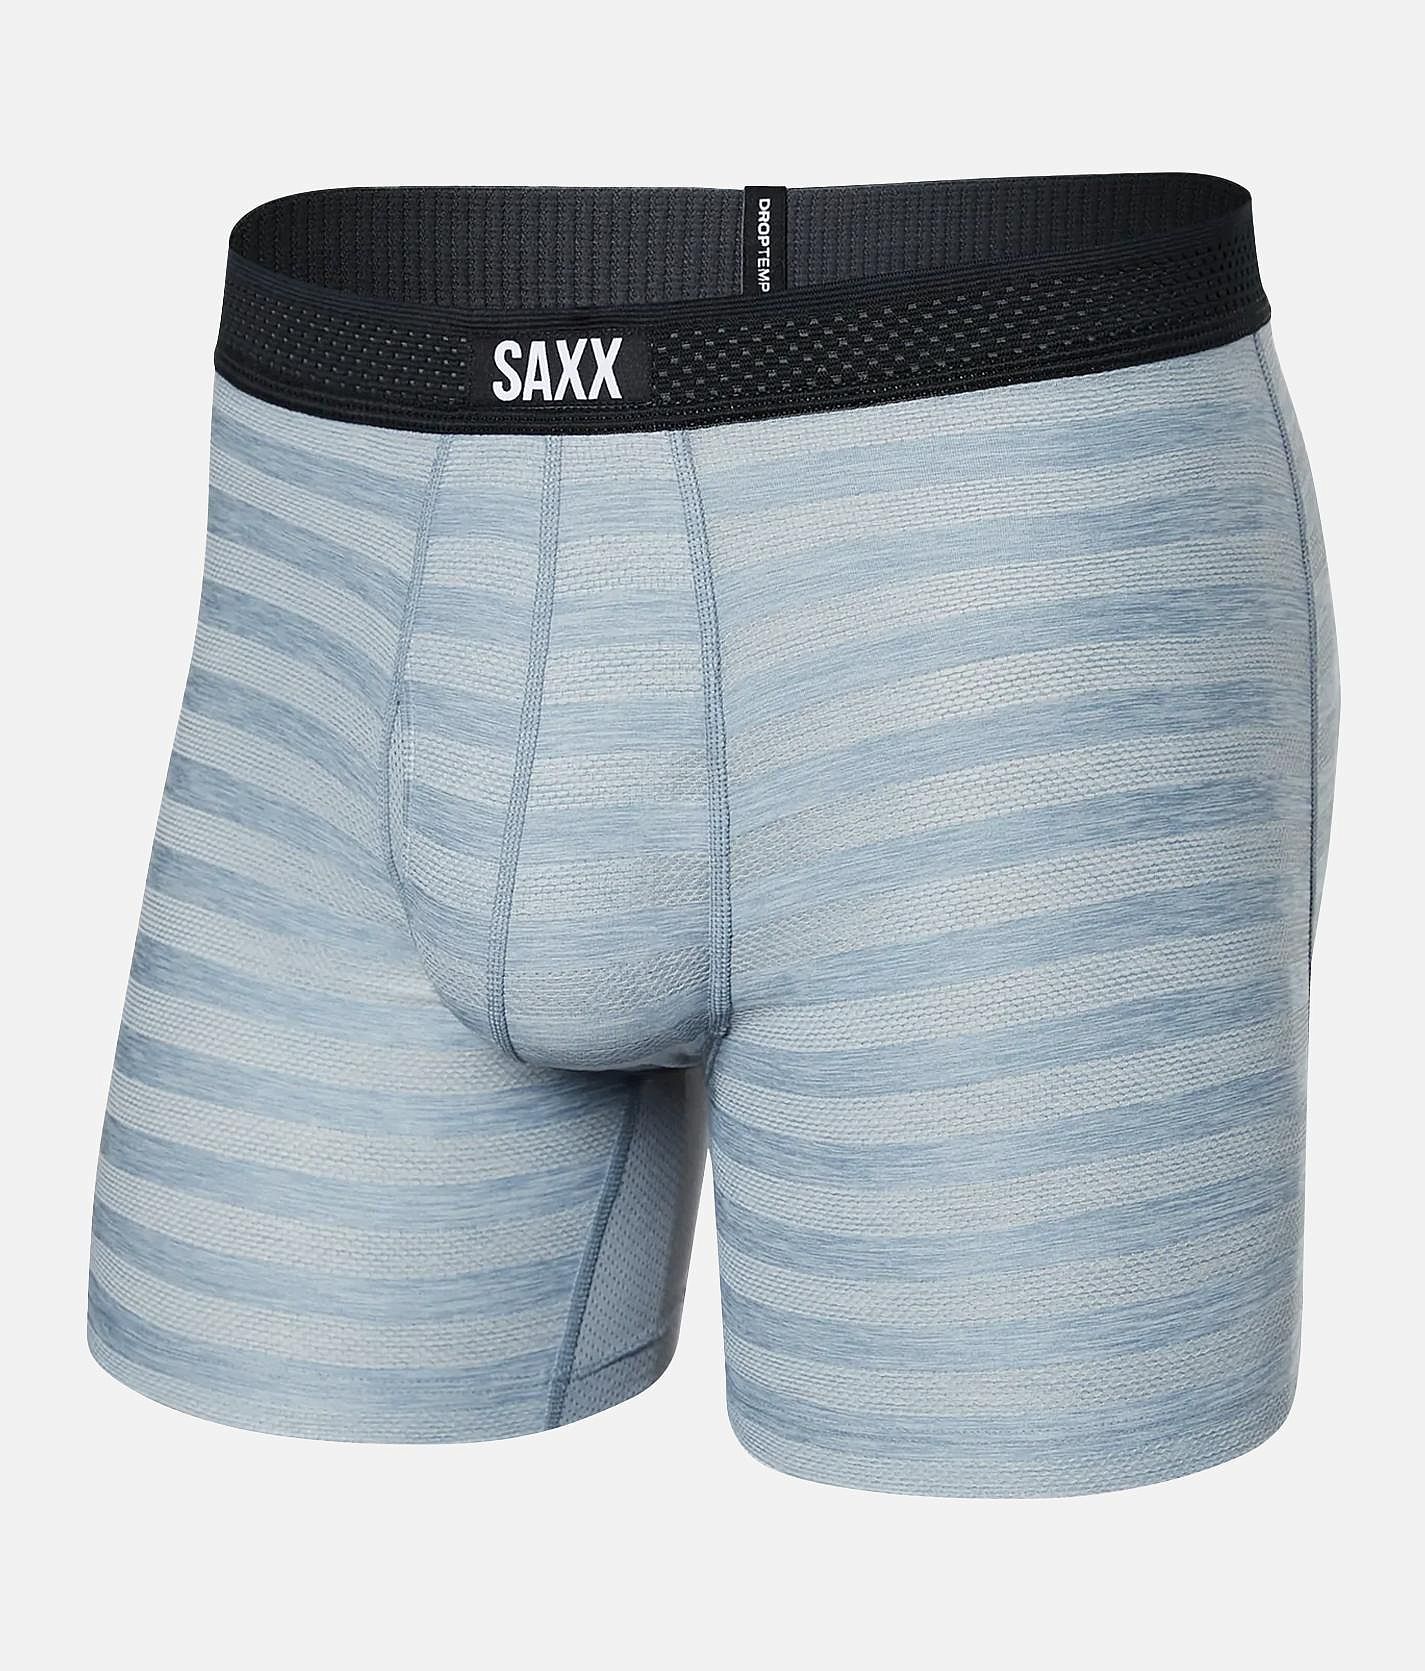 Saxx Underwear Droptemp Cooling Cotton Men's Briefs